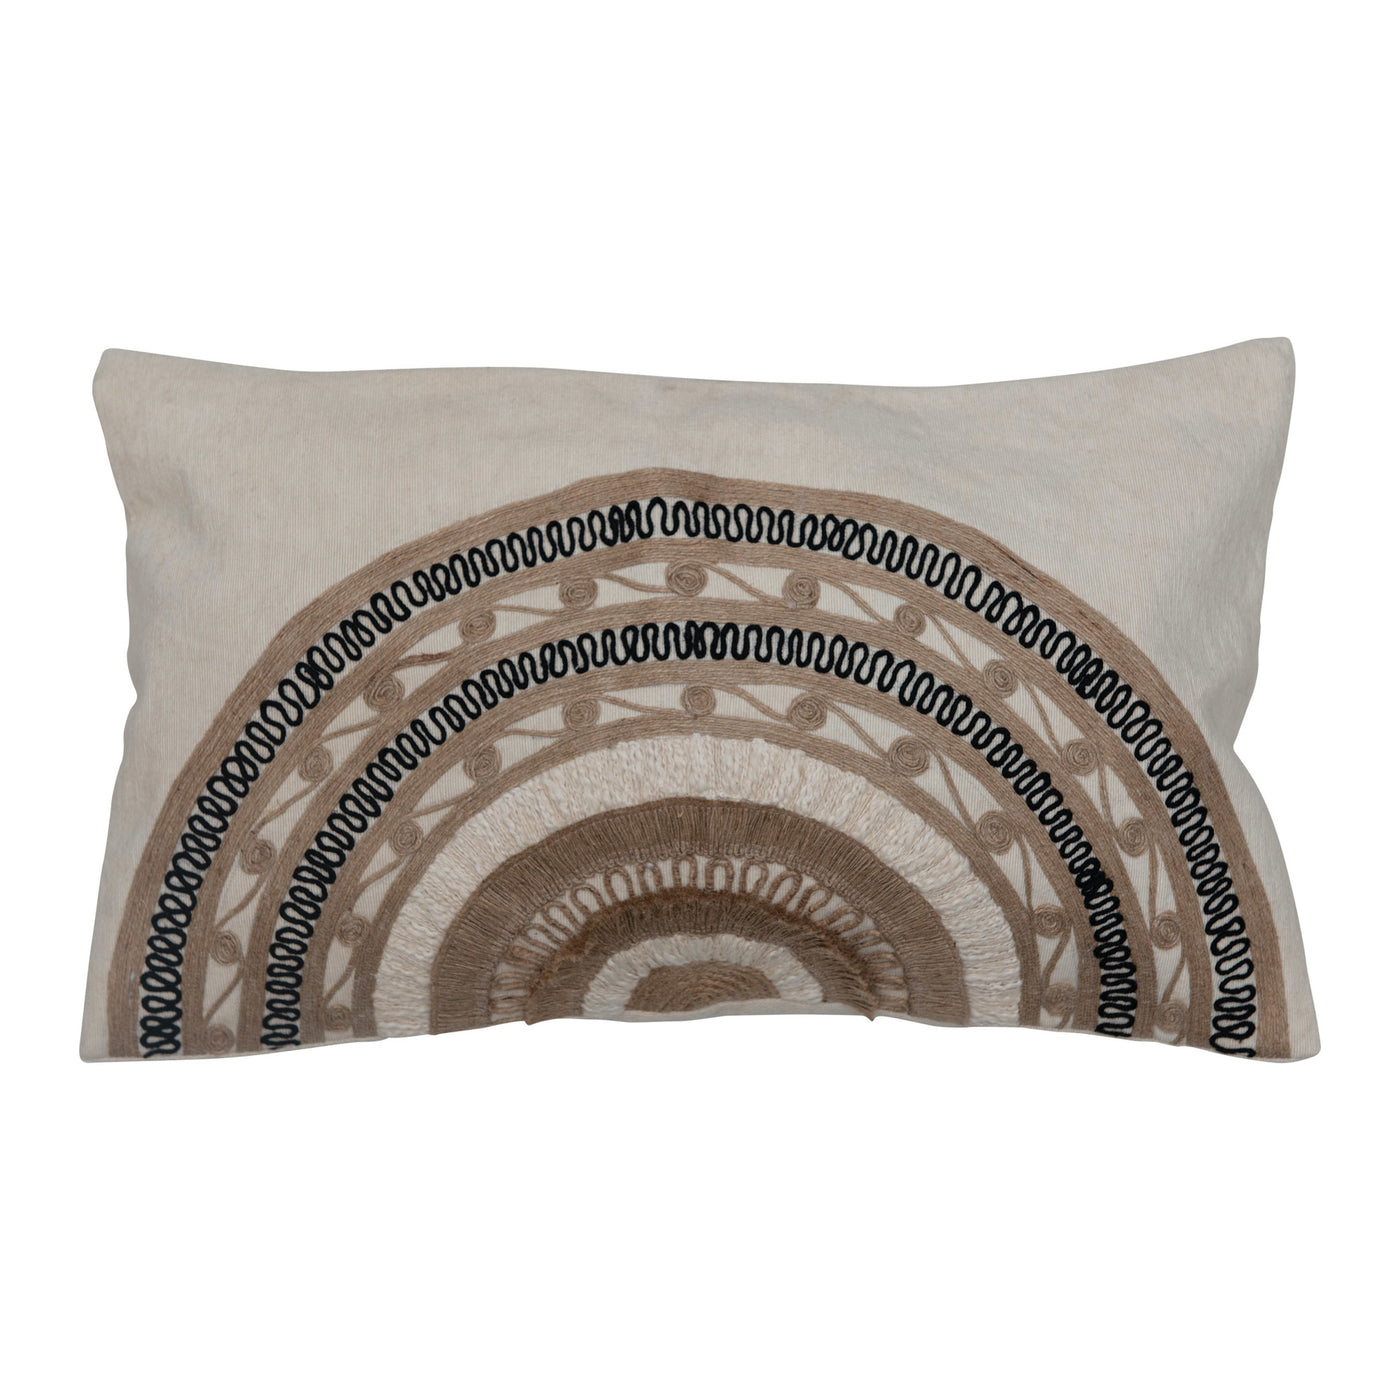 Embroidered Lumbar Pillow